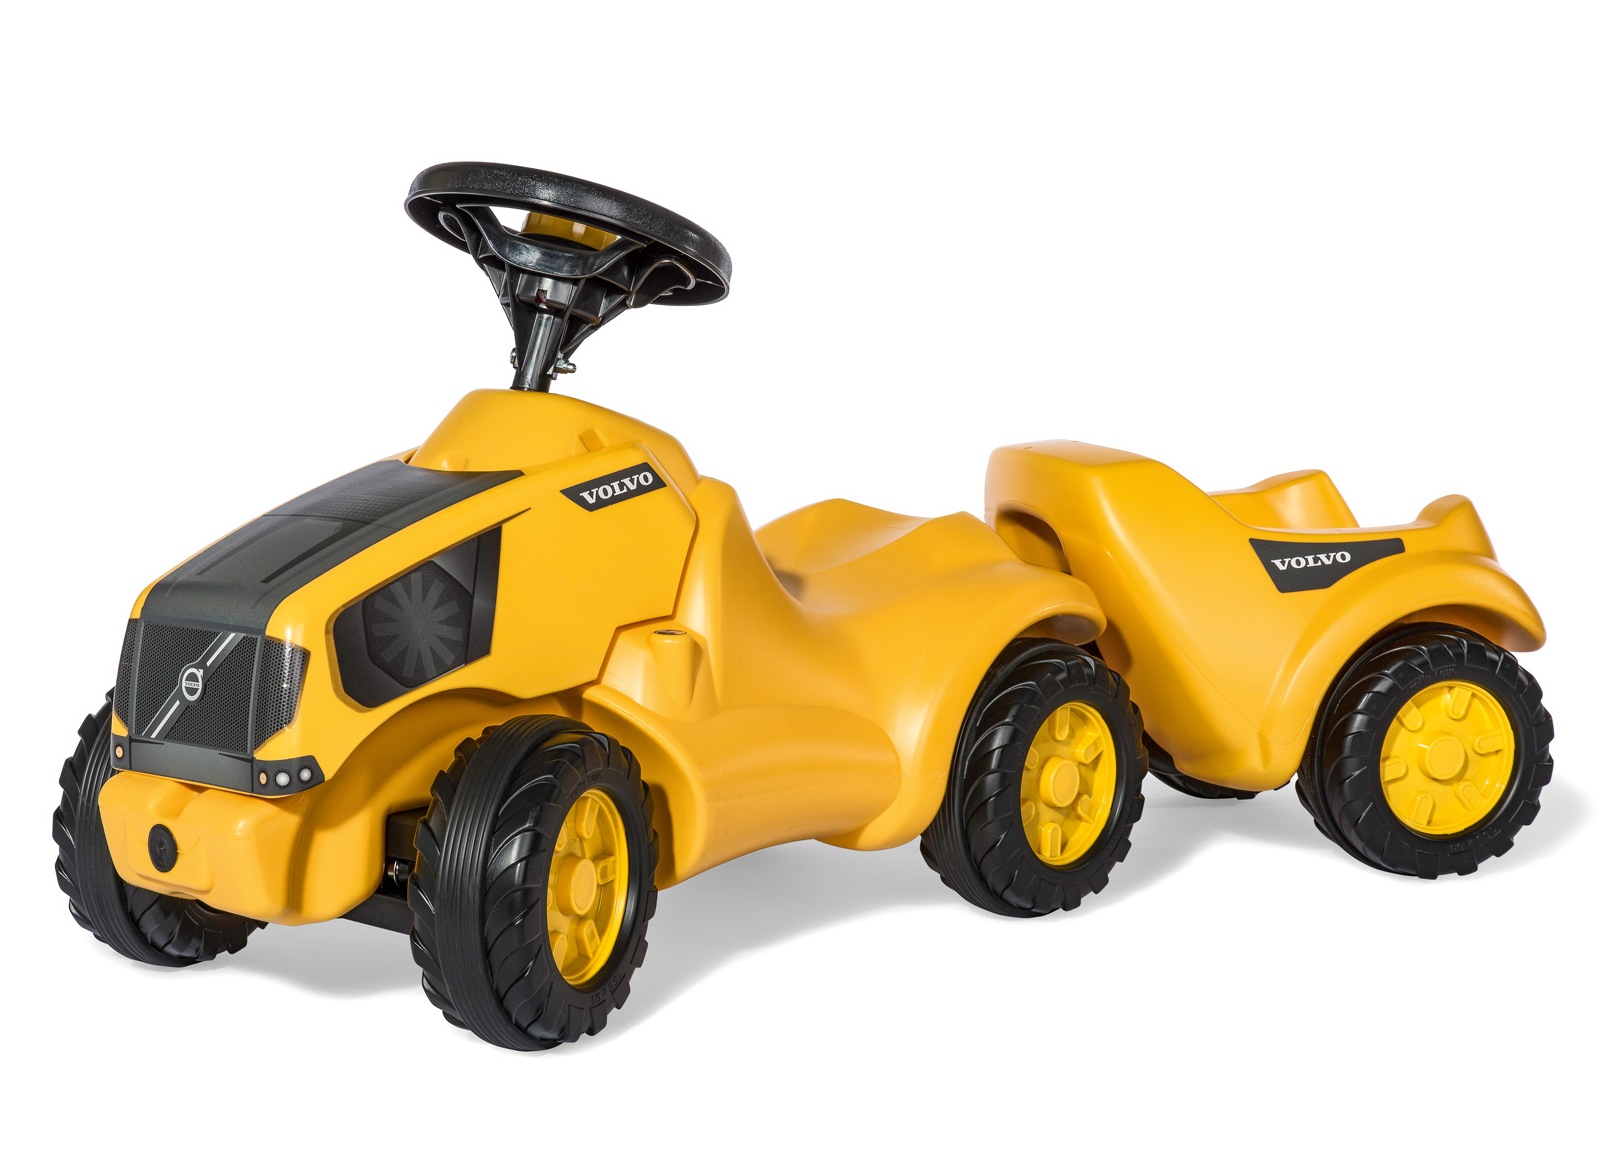 Tractor fara pedale Rolly Toys 132560, Volvo Minitrac cu remorca